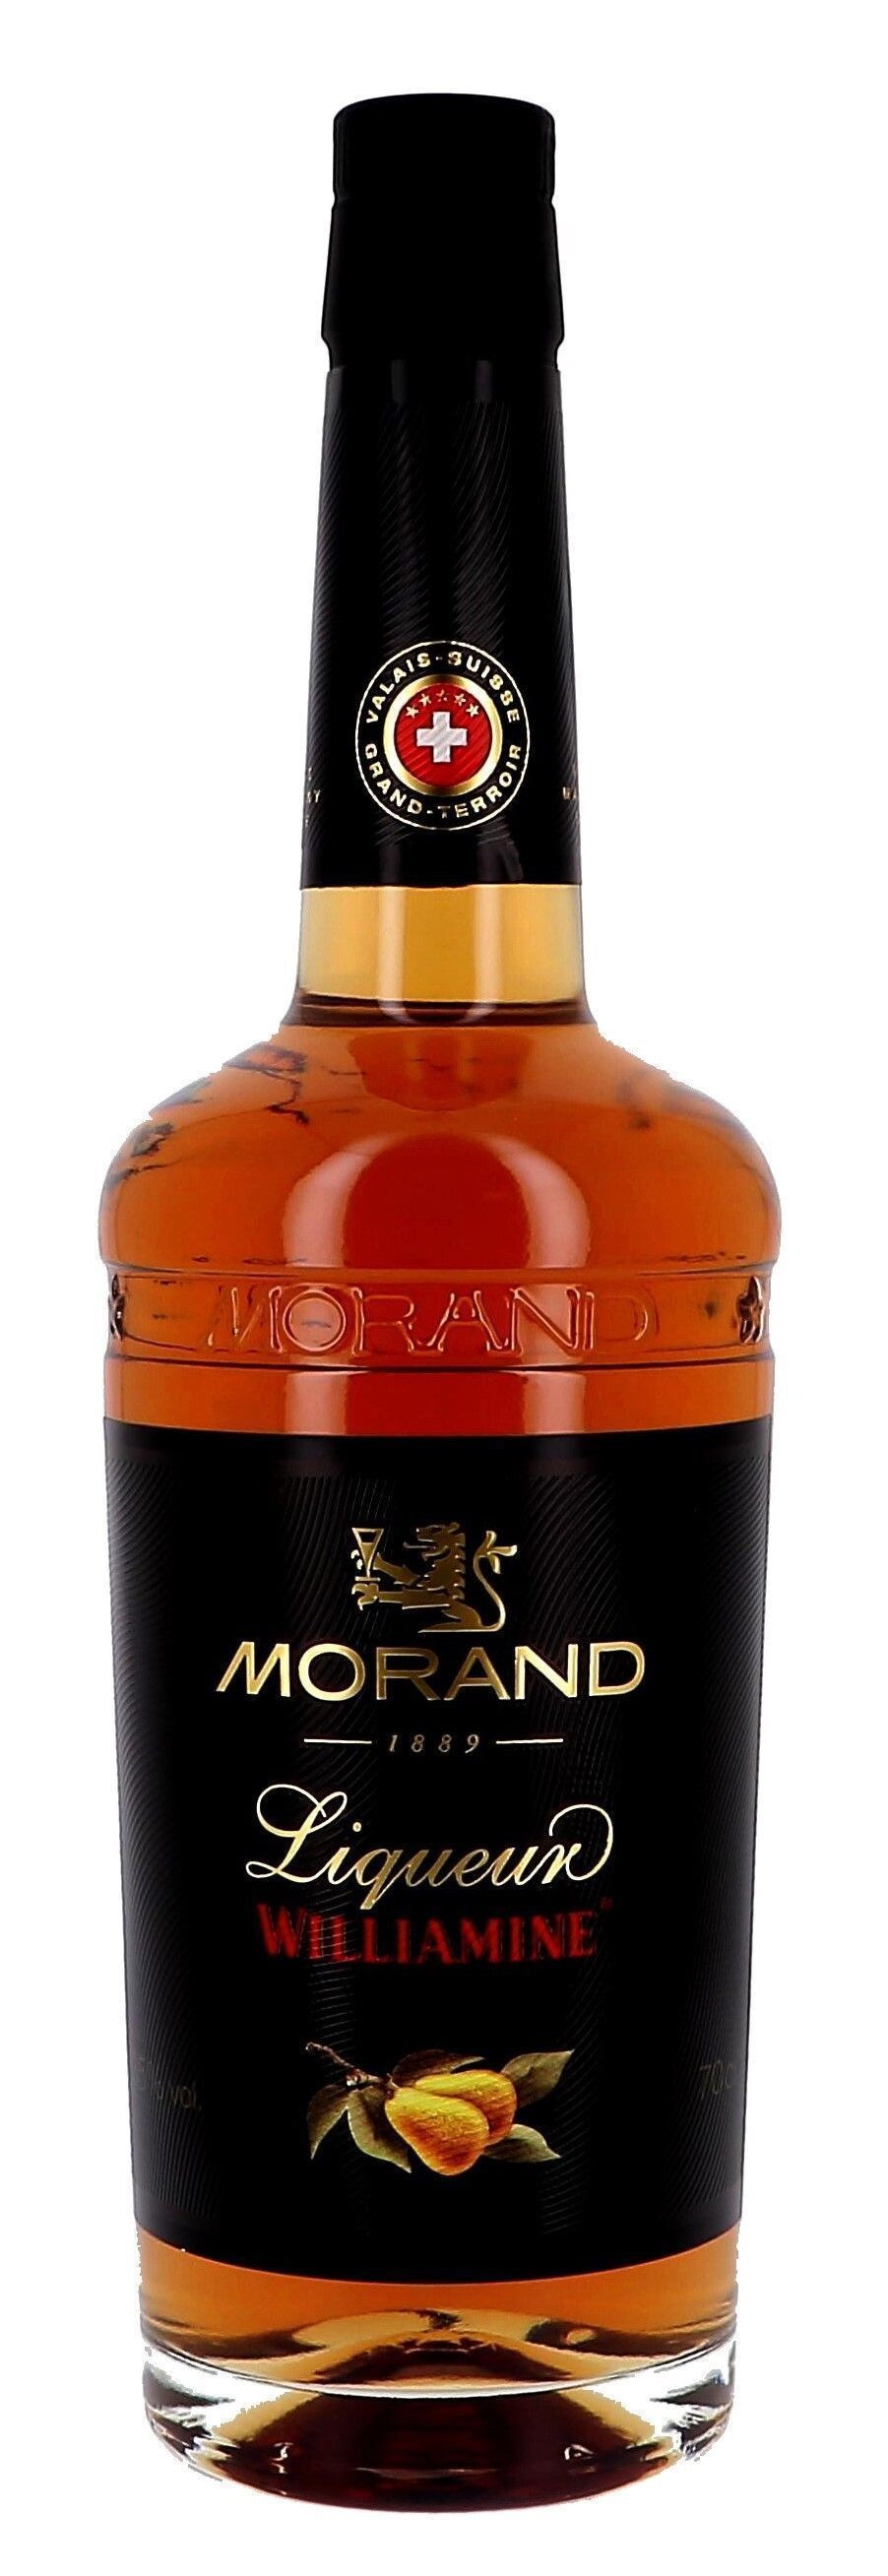 Morand Williamine pear 70cl 35% Liqueur Switzerland - liqueur